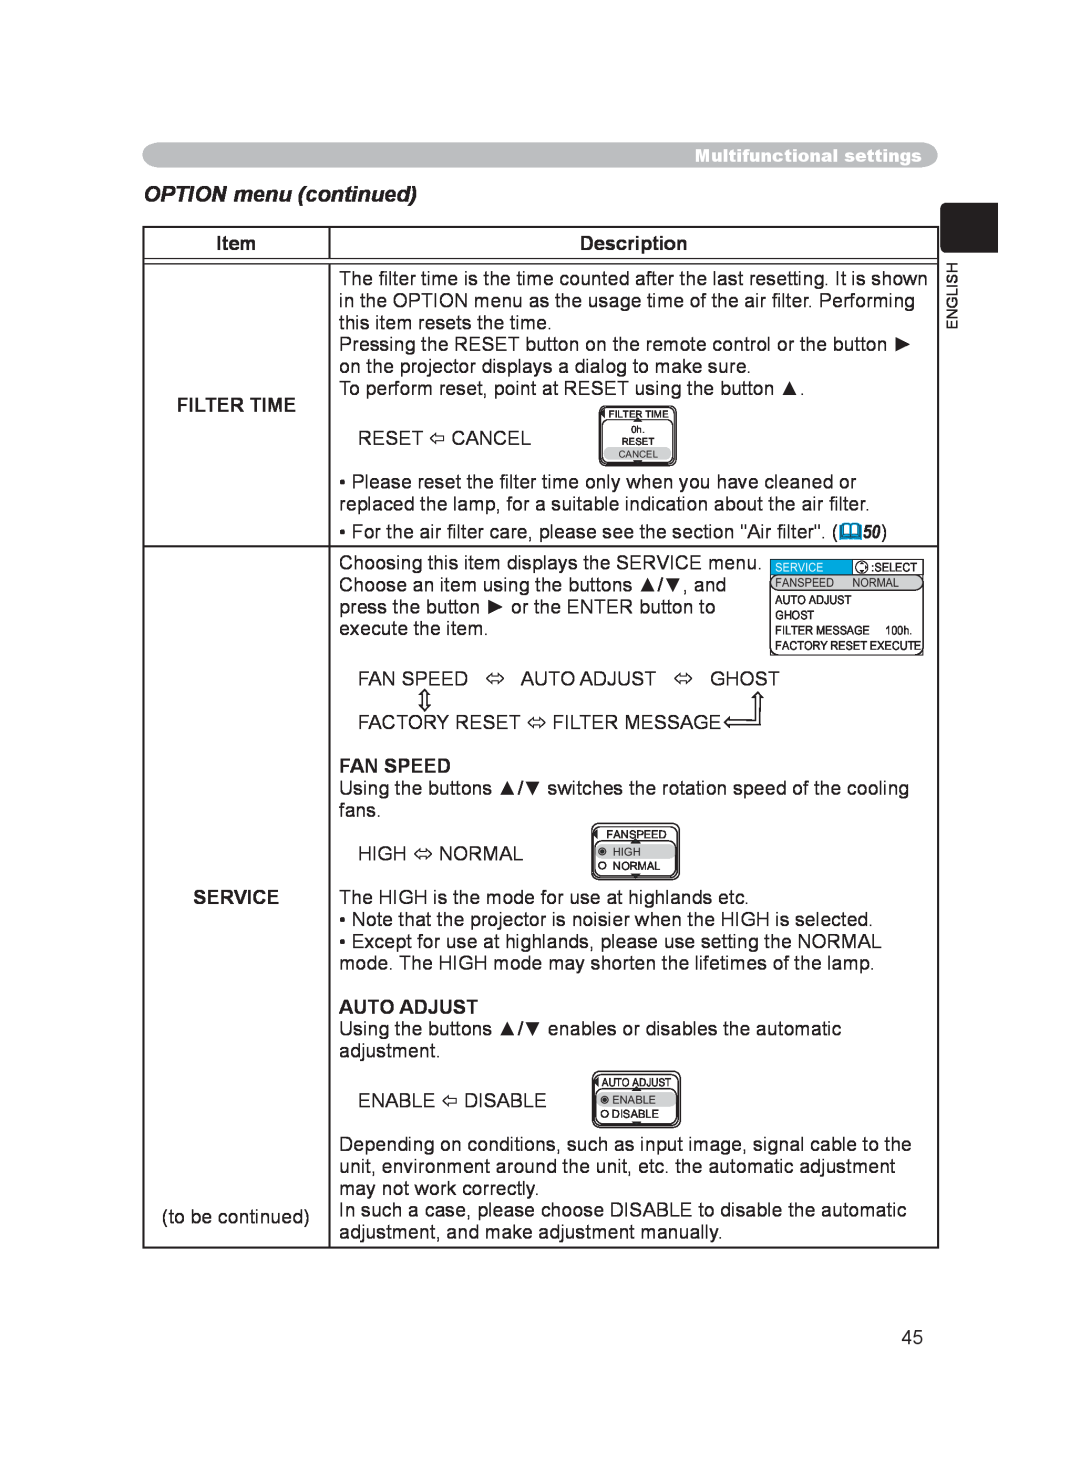 Hitachi PJ-LC9 user manual OPTION menu continued, Description, Filter Time, Fan Speed, Service, Auto Adjust 